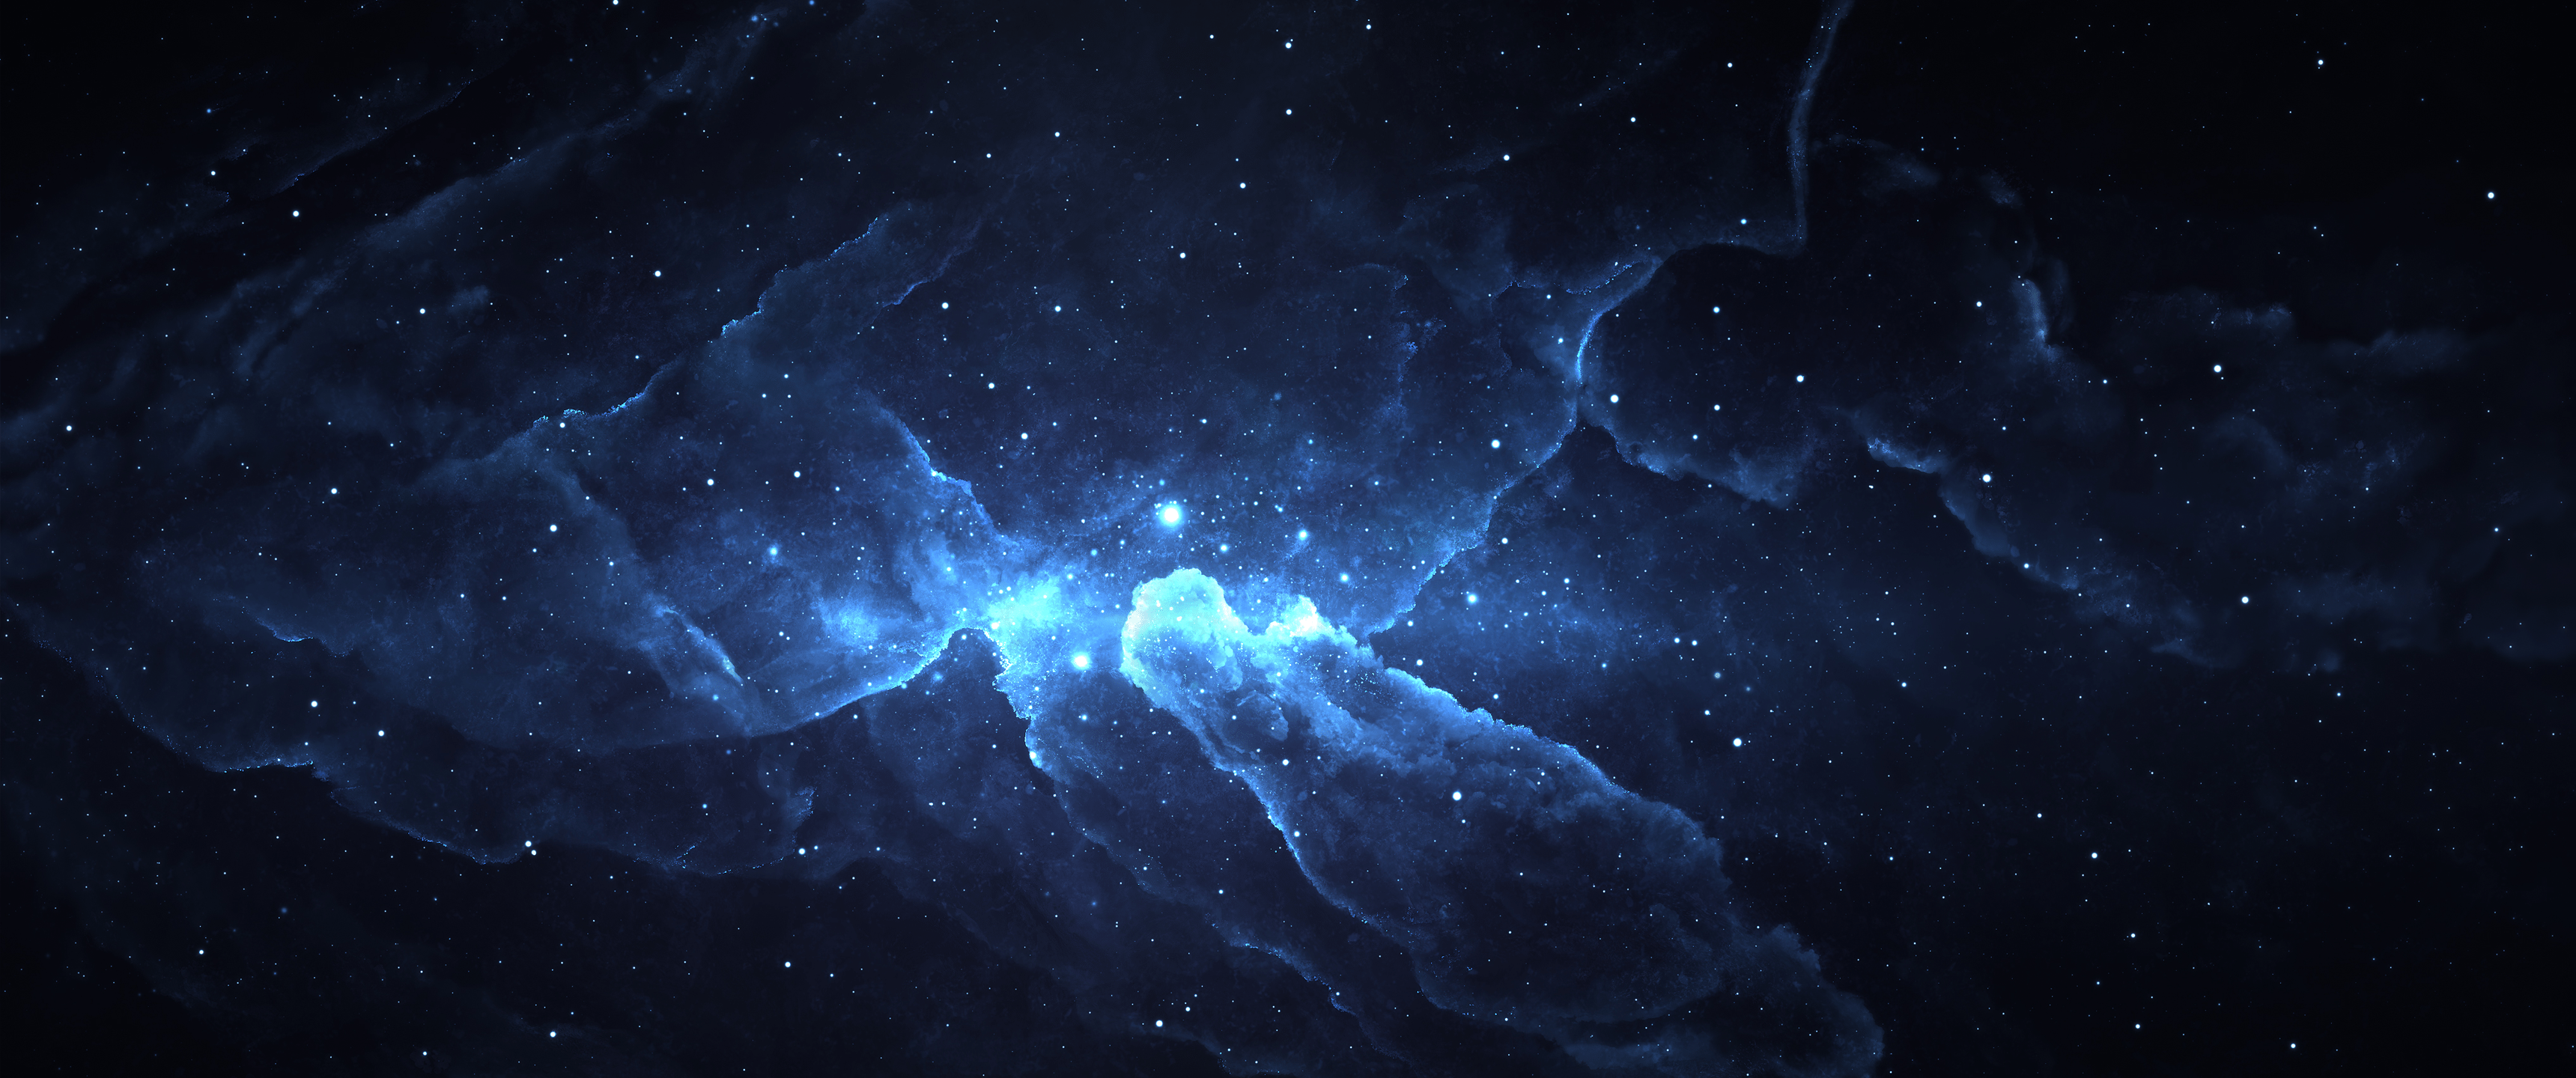 3440X1440 Hình nền chiến tranh sao thiên hà sẽ khiến bạn cảm thấy như đang là một chiến binh thép thực sự trong không gian rộng lớn. Tông màu hoàng hôn lung linh lấp lánh cùng những chi tiết minh họa bắt mắt sẽ làm tăng thêm trải nghiệm của bạn.